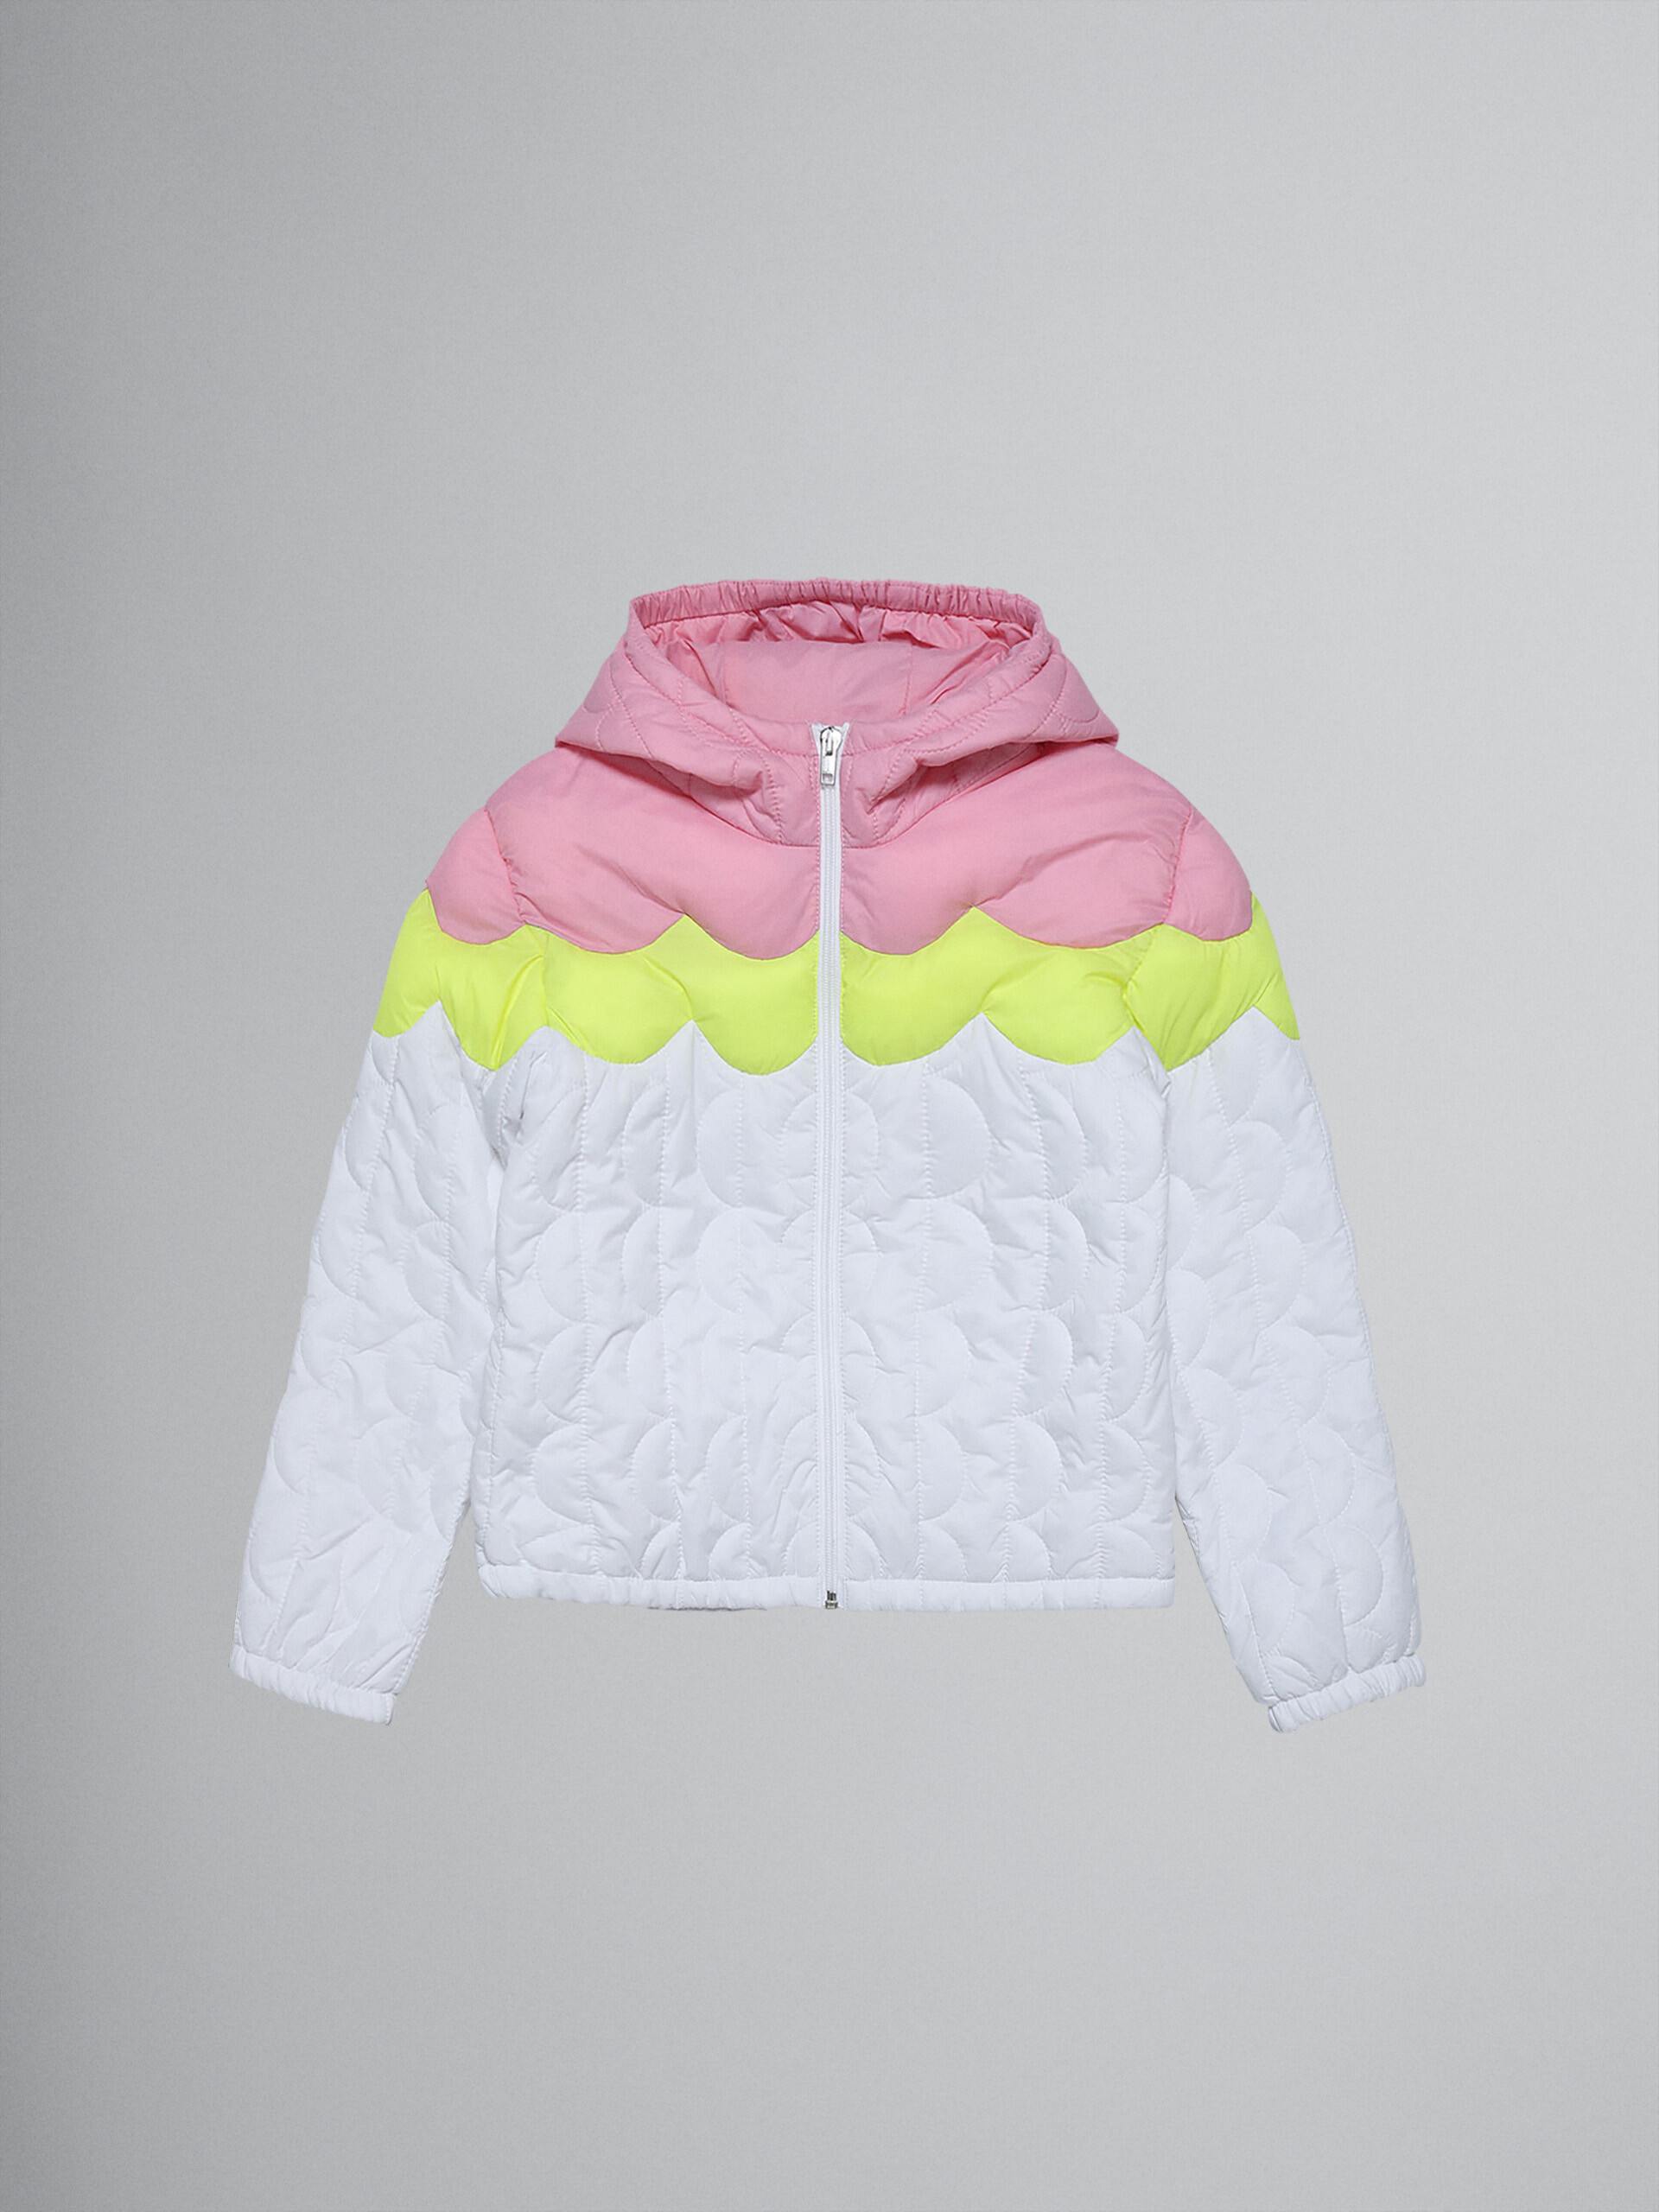 Dreifarbige, leicht gepolsterte Windjacke aus Nylon - Jacken - Image 1